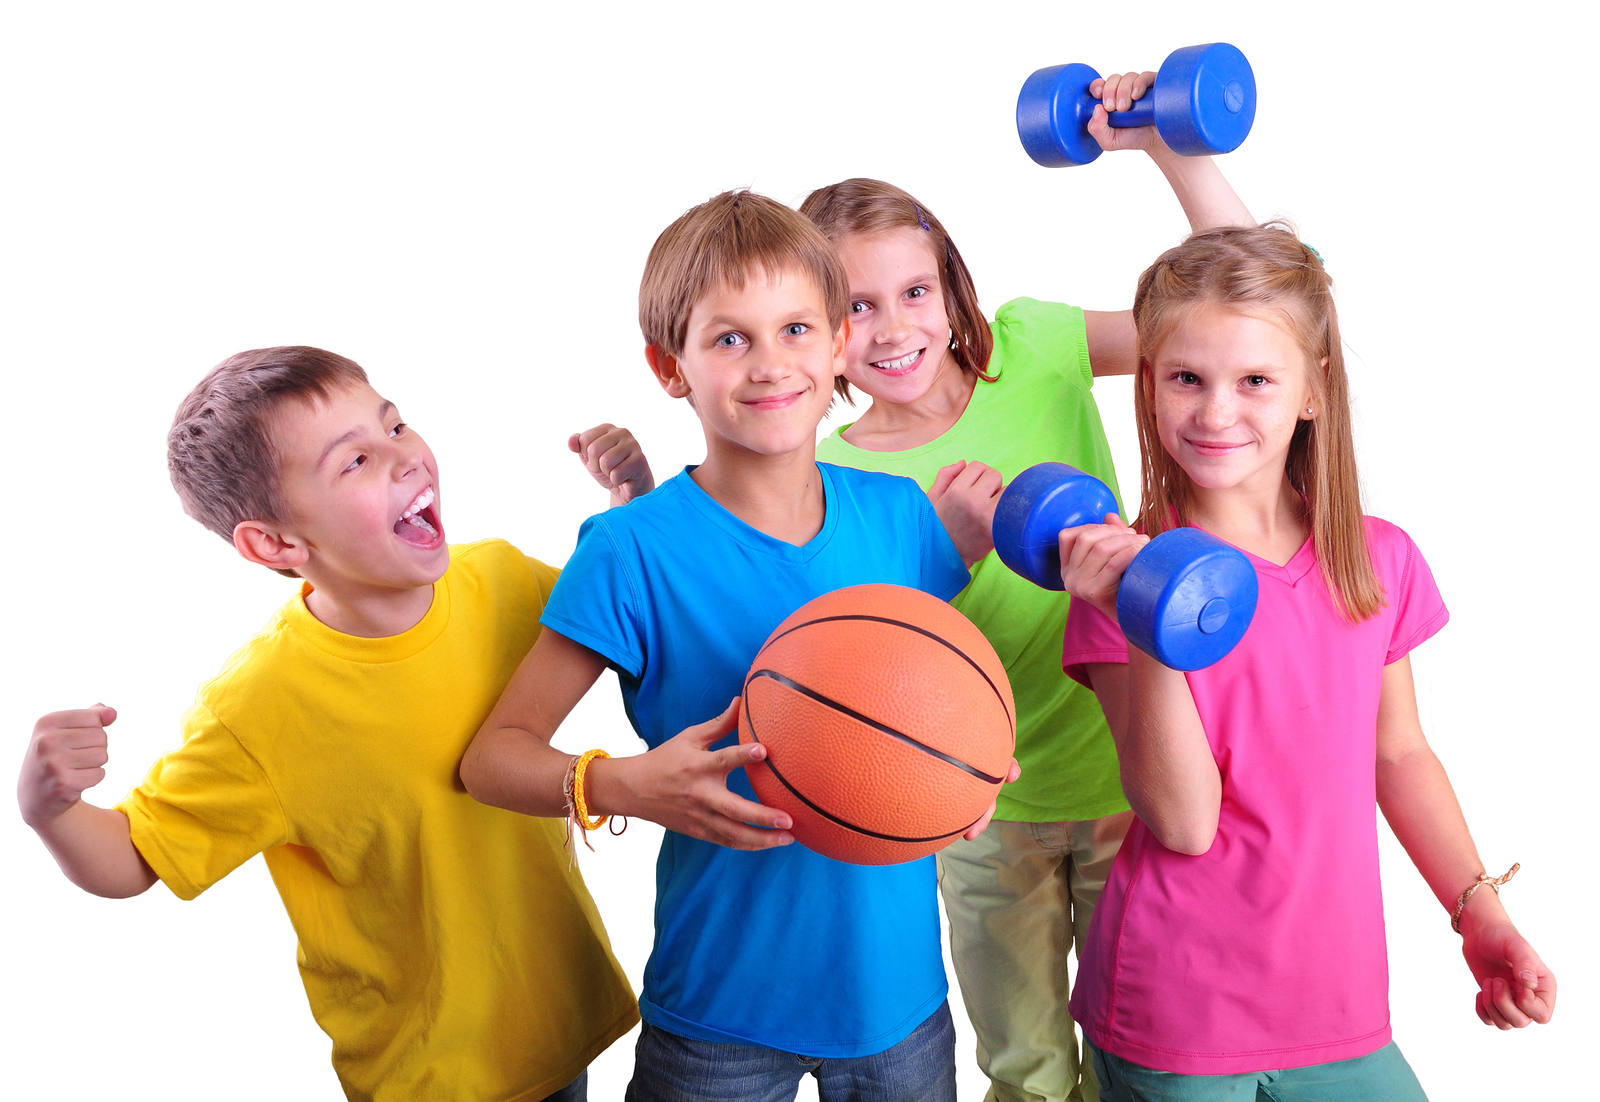 Many of you do sports. Спорт дети. Физическая культура. Спортивные кружки. Занятие физкультурой и спортом.